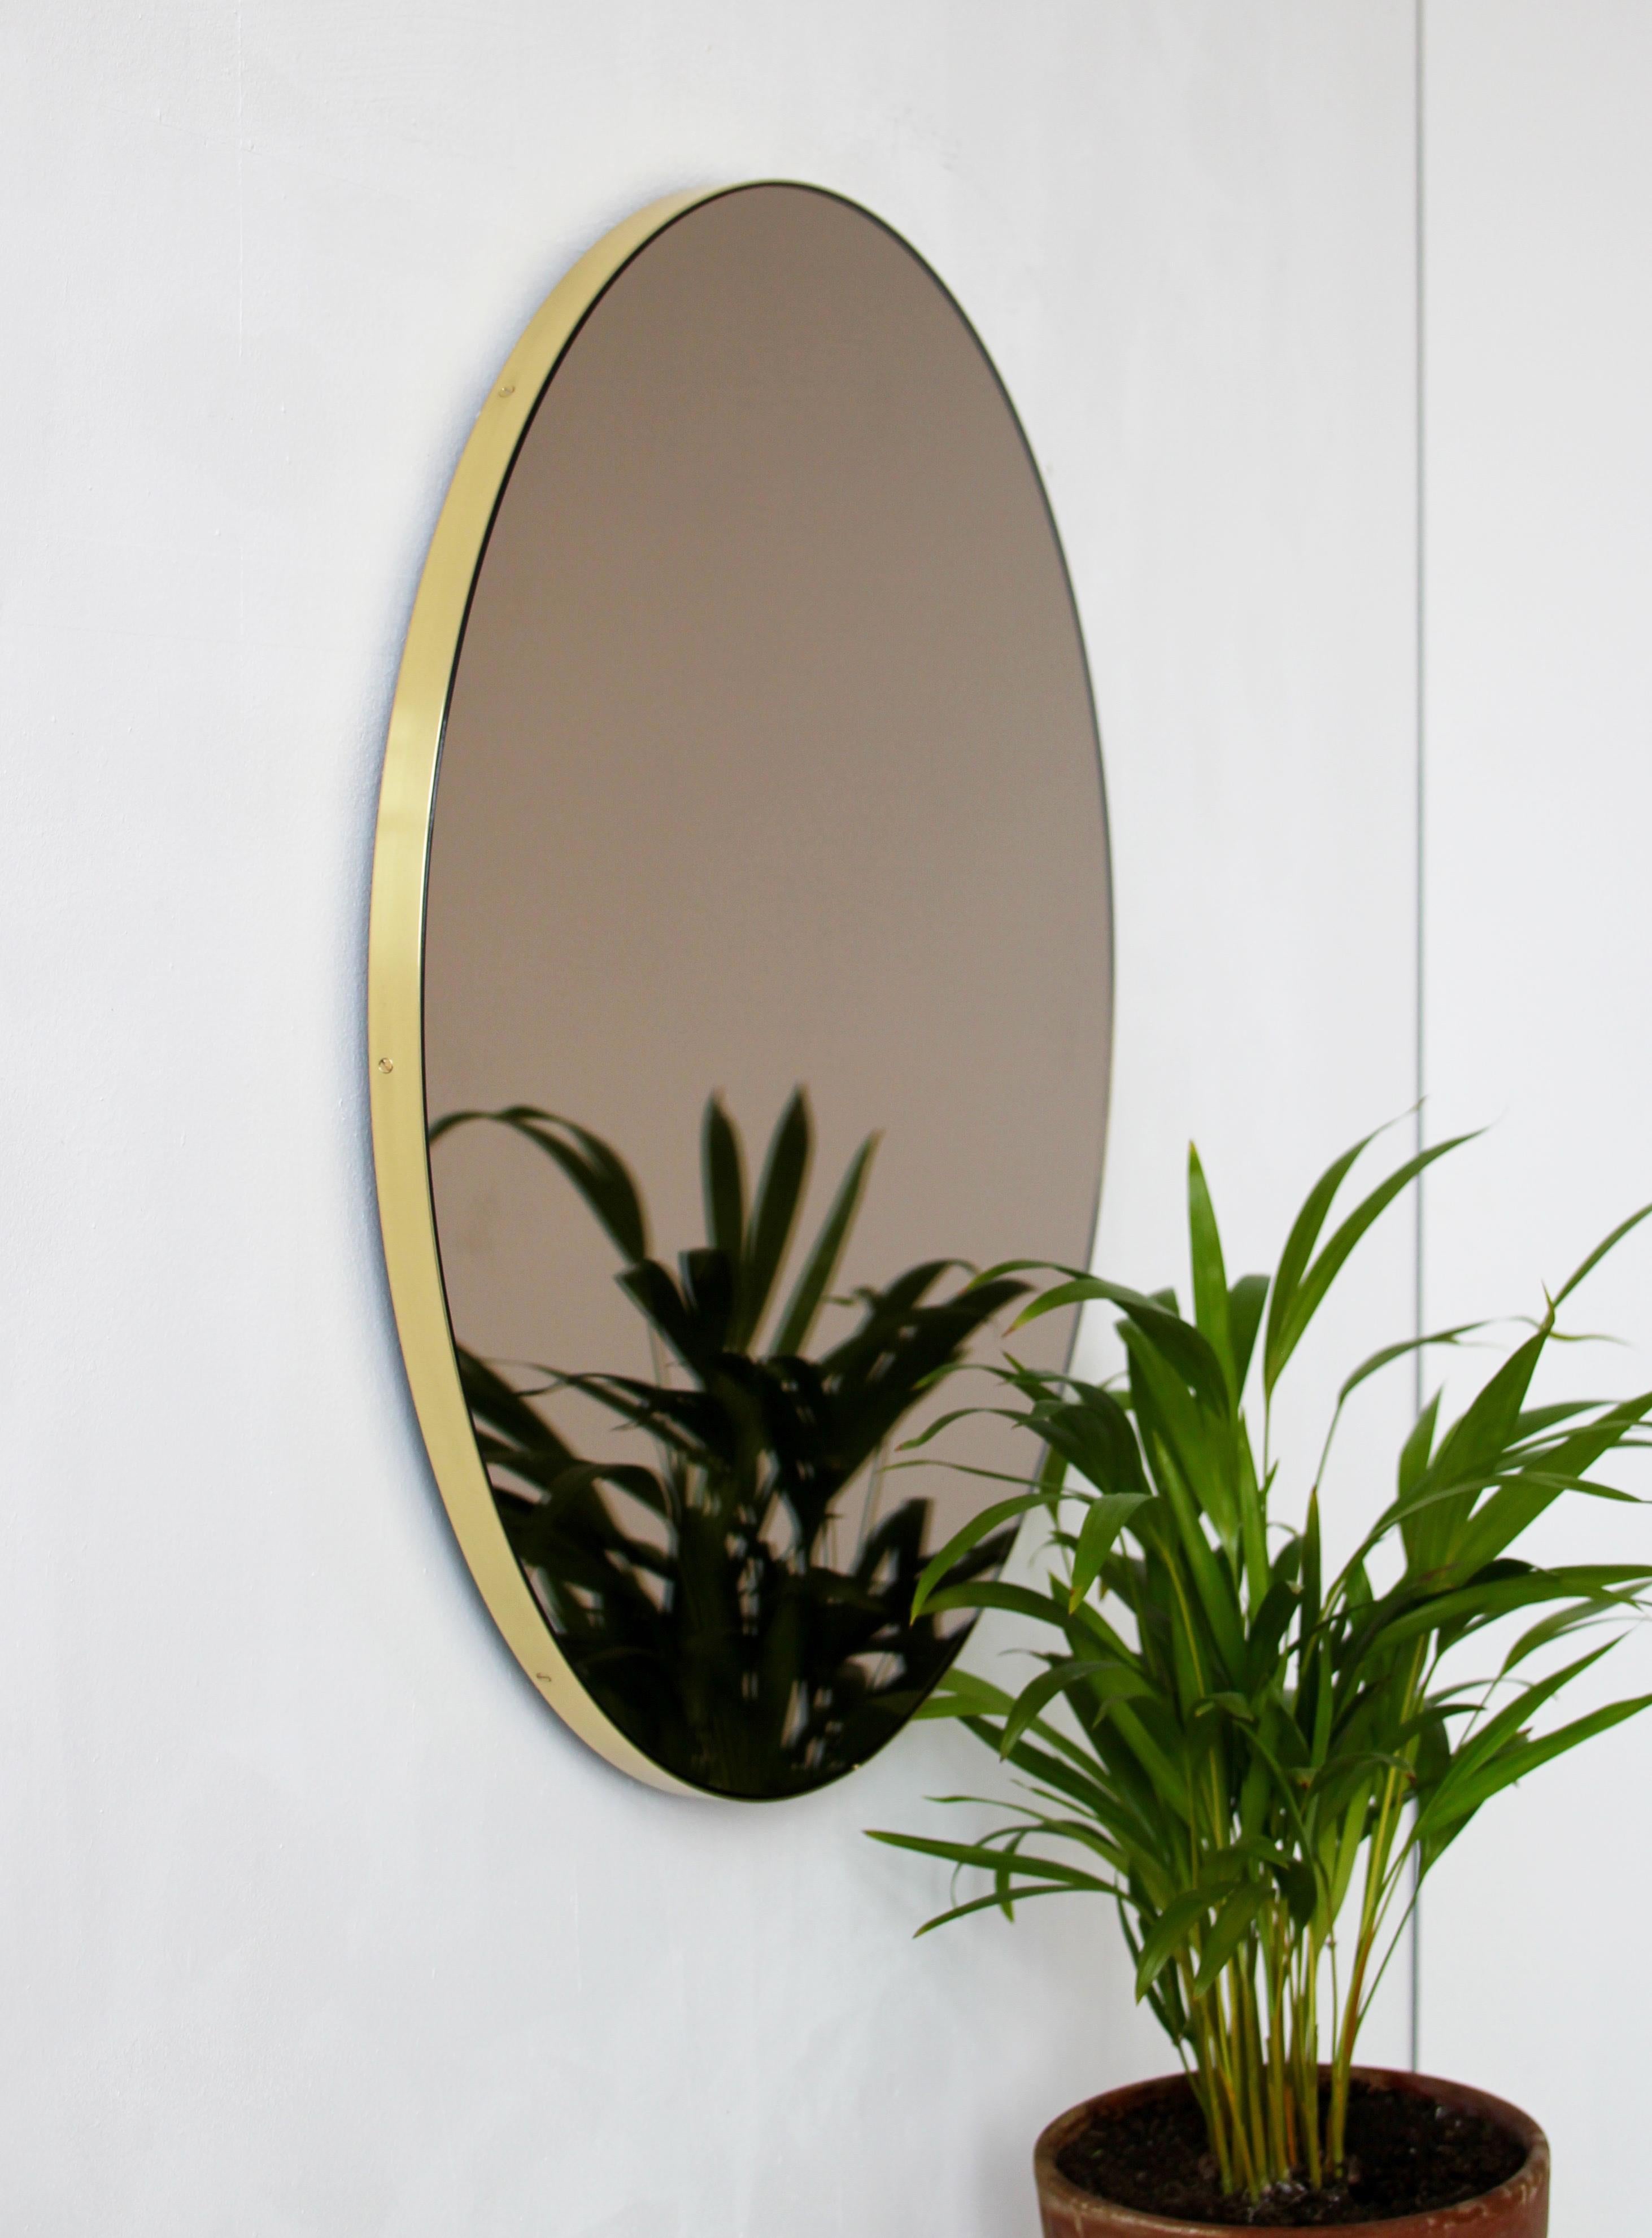 Miroir rond minimaliste teinté de bronze avec un élégant cadre en laiton brossé. Les détails et la finition, notamment les vis apparentes en laiton, soulignent le caractère artisanal et la qualité du miroir, véritable signature de notre marque.